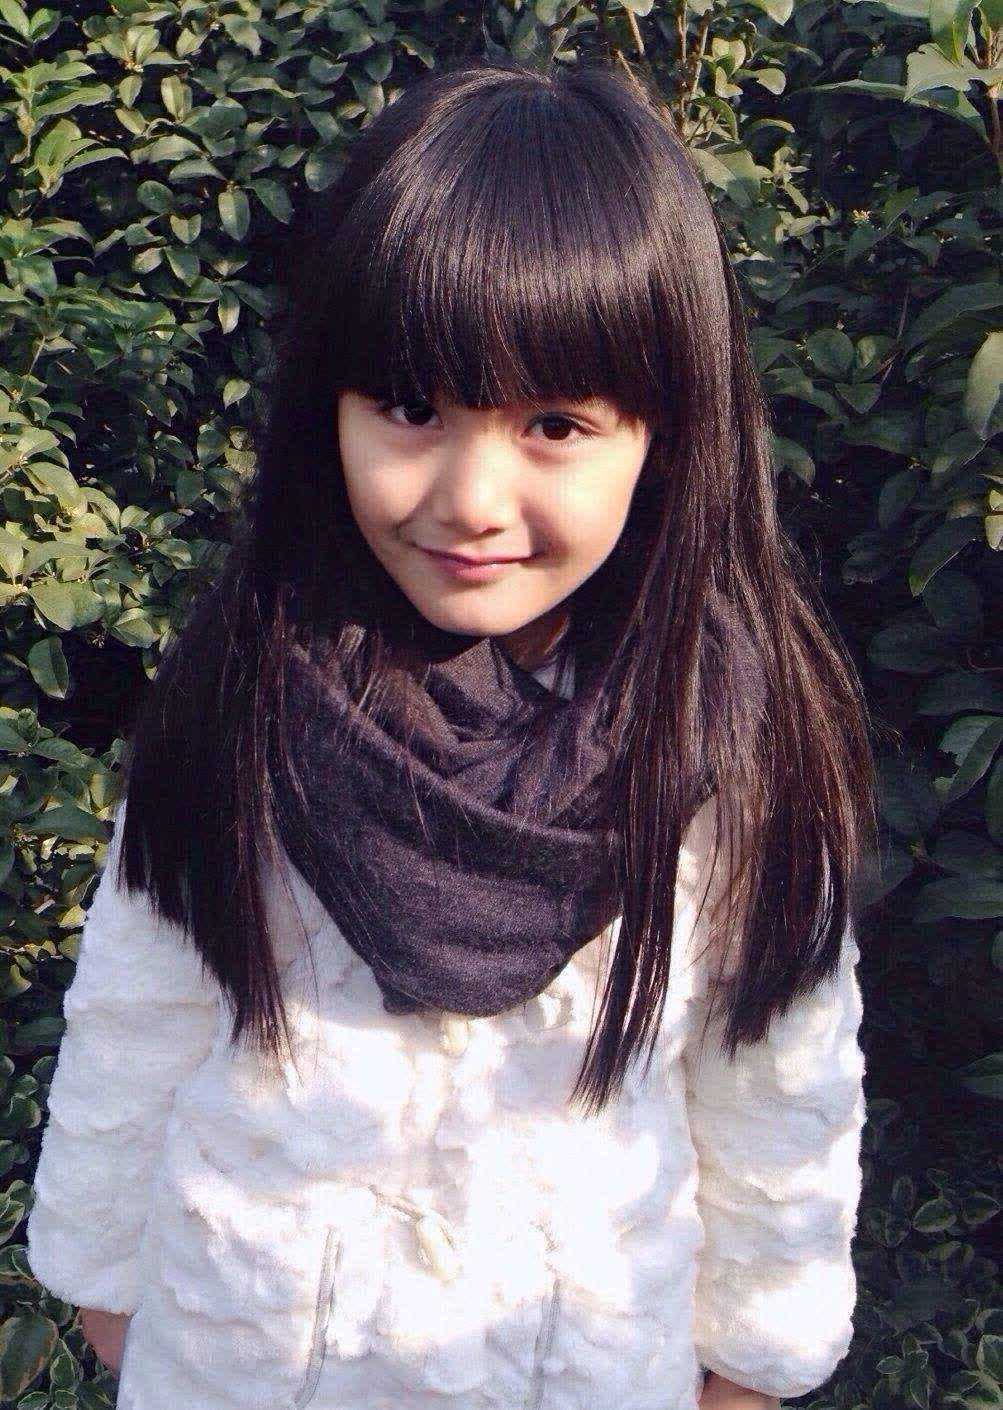 中国最美童星颜值图片